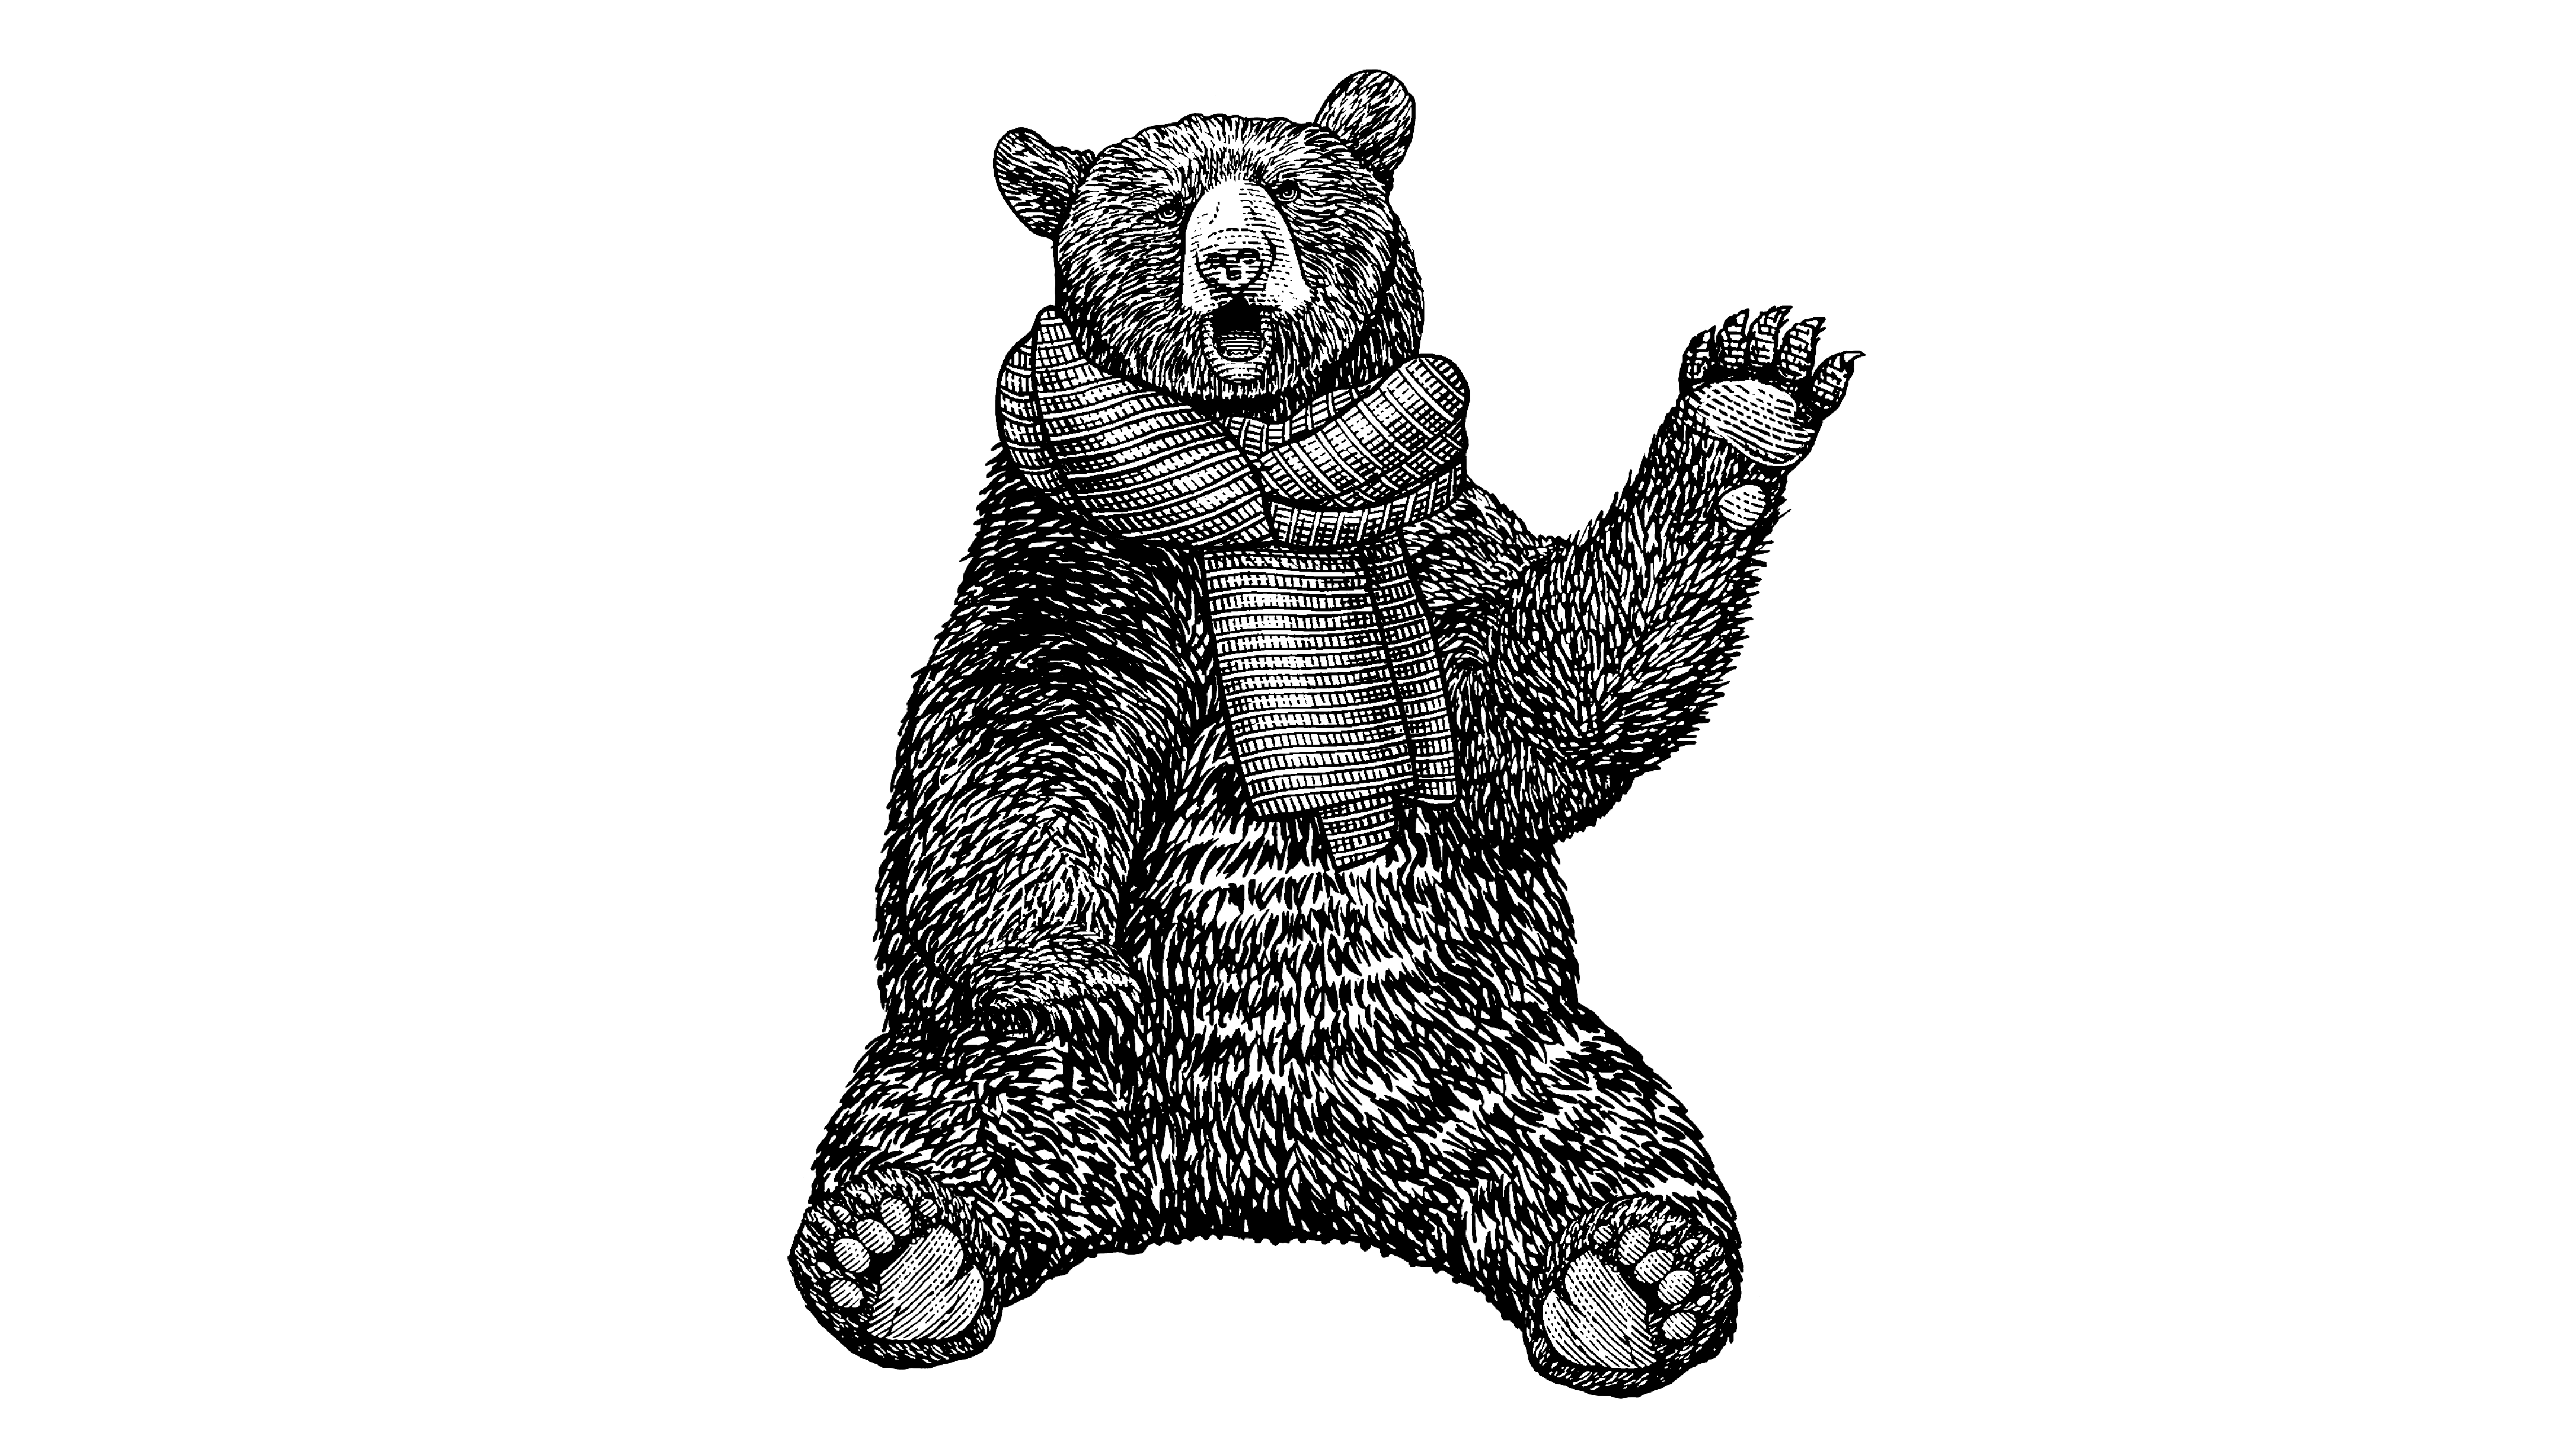 The bear mascot waving his hand